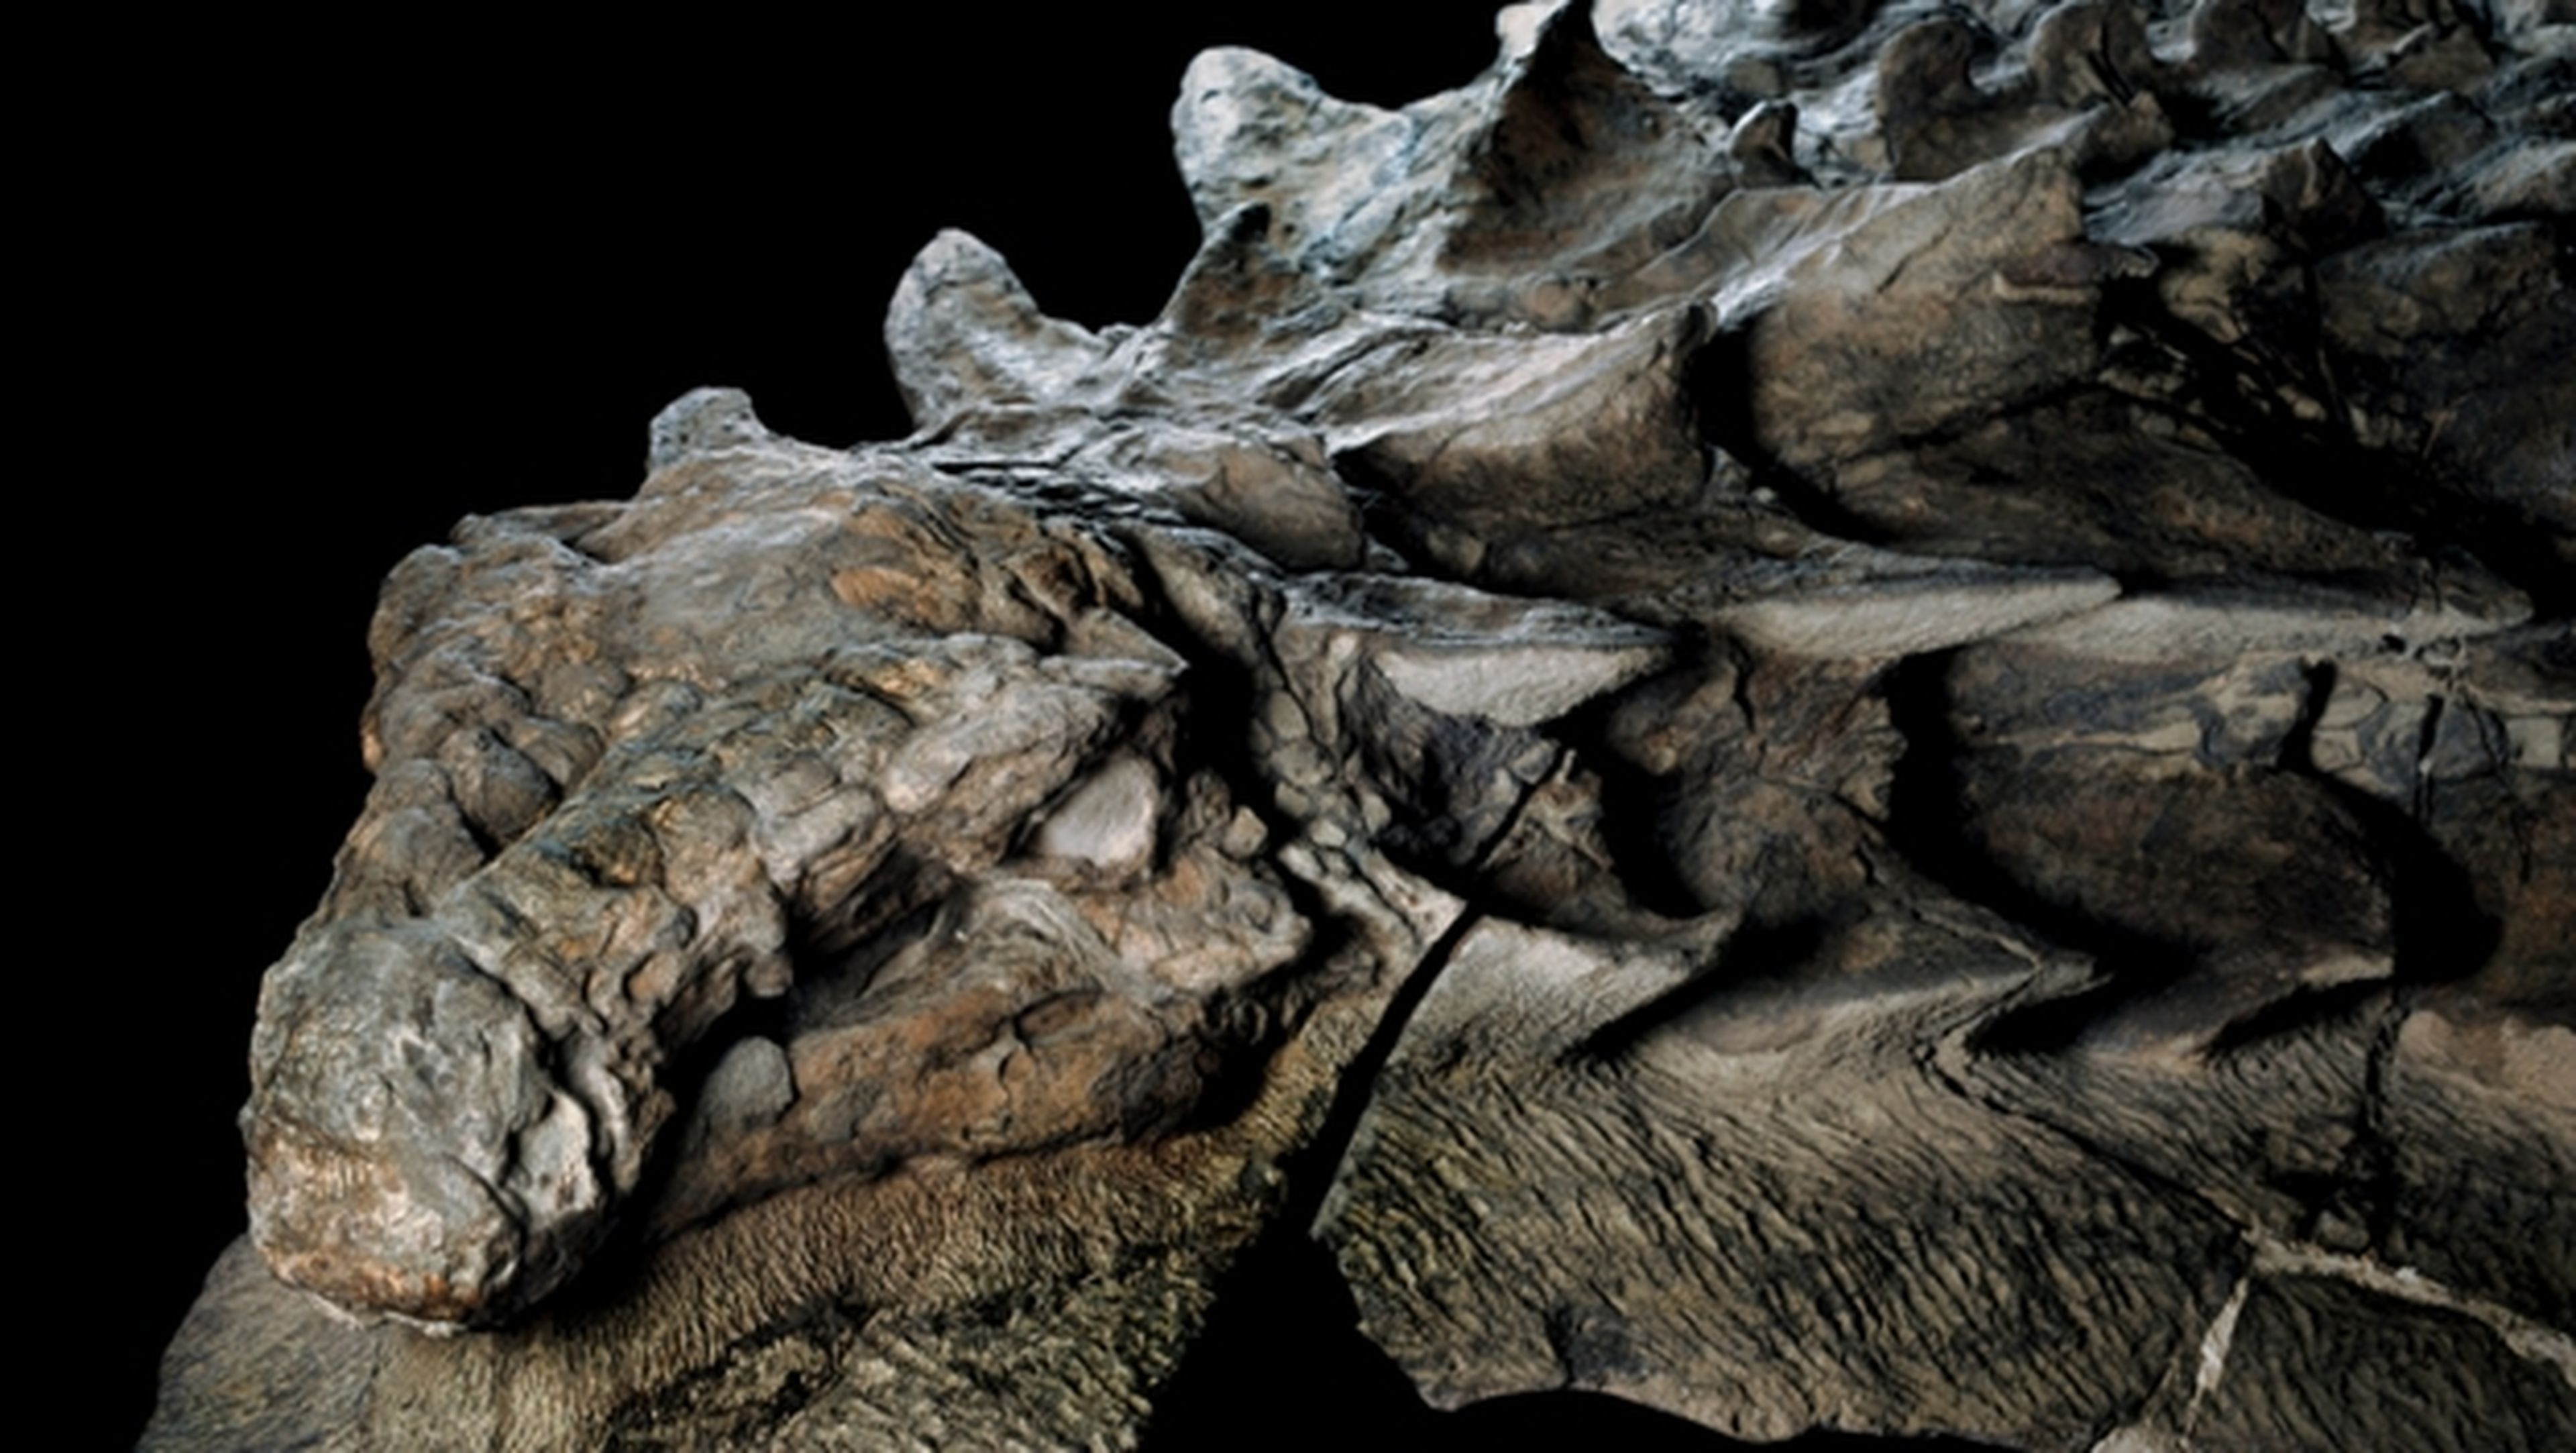 Hallan dinosaurio momificado que parece un dragón de Juego de Tronos